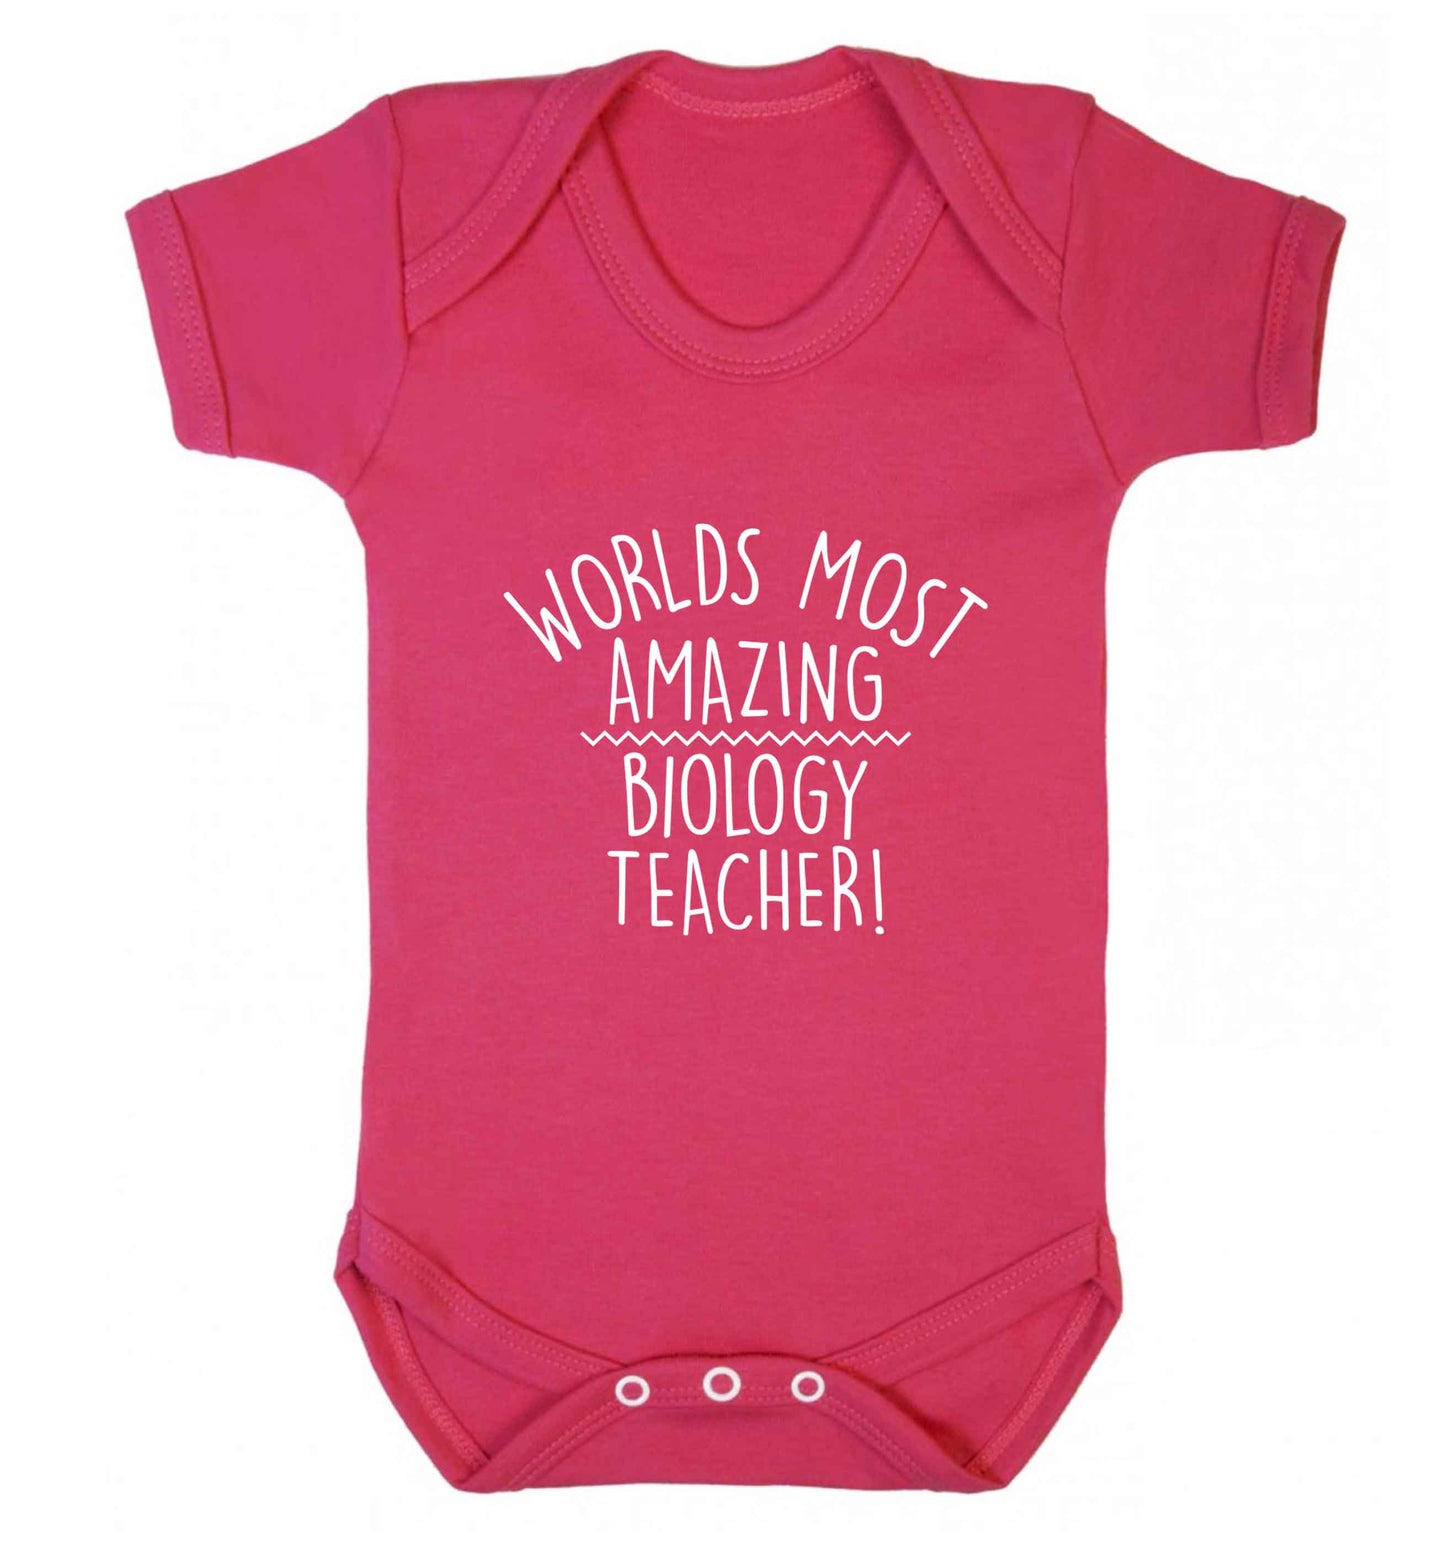 Worlds most amazing biology teacher baby vest dark pink 18-24 months